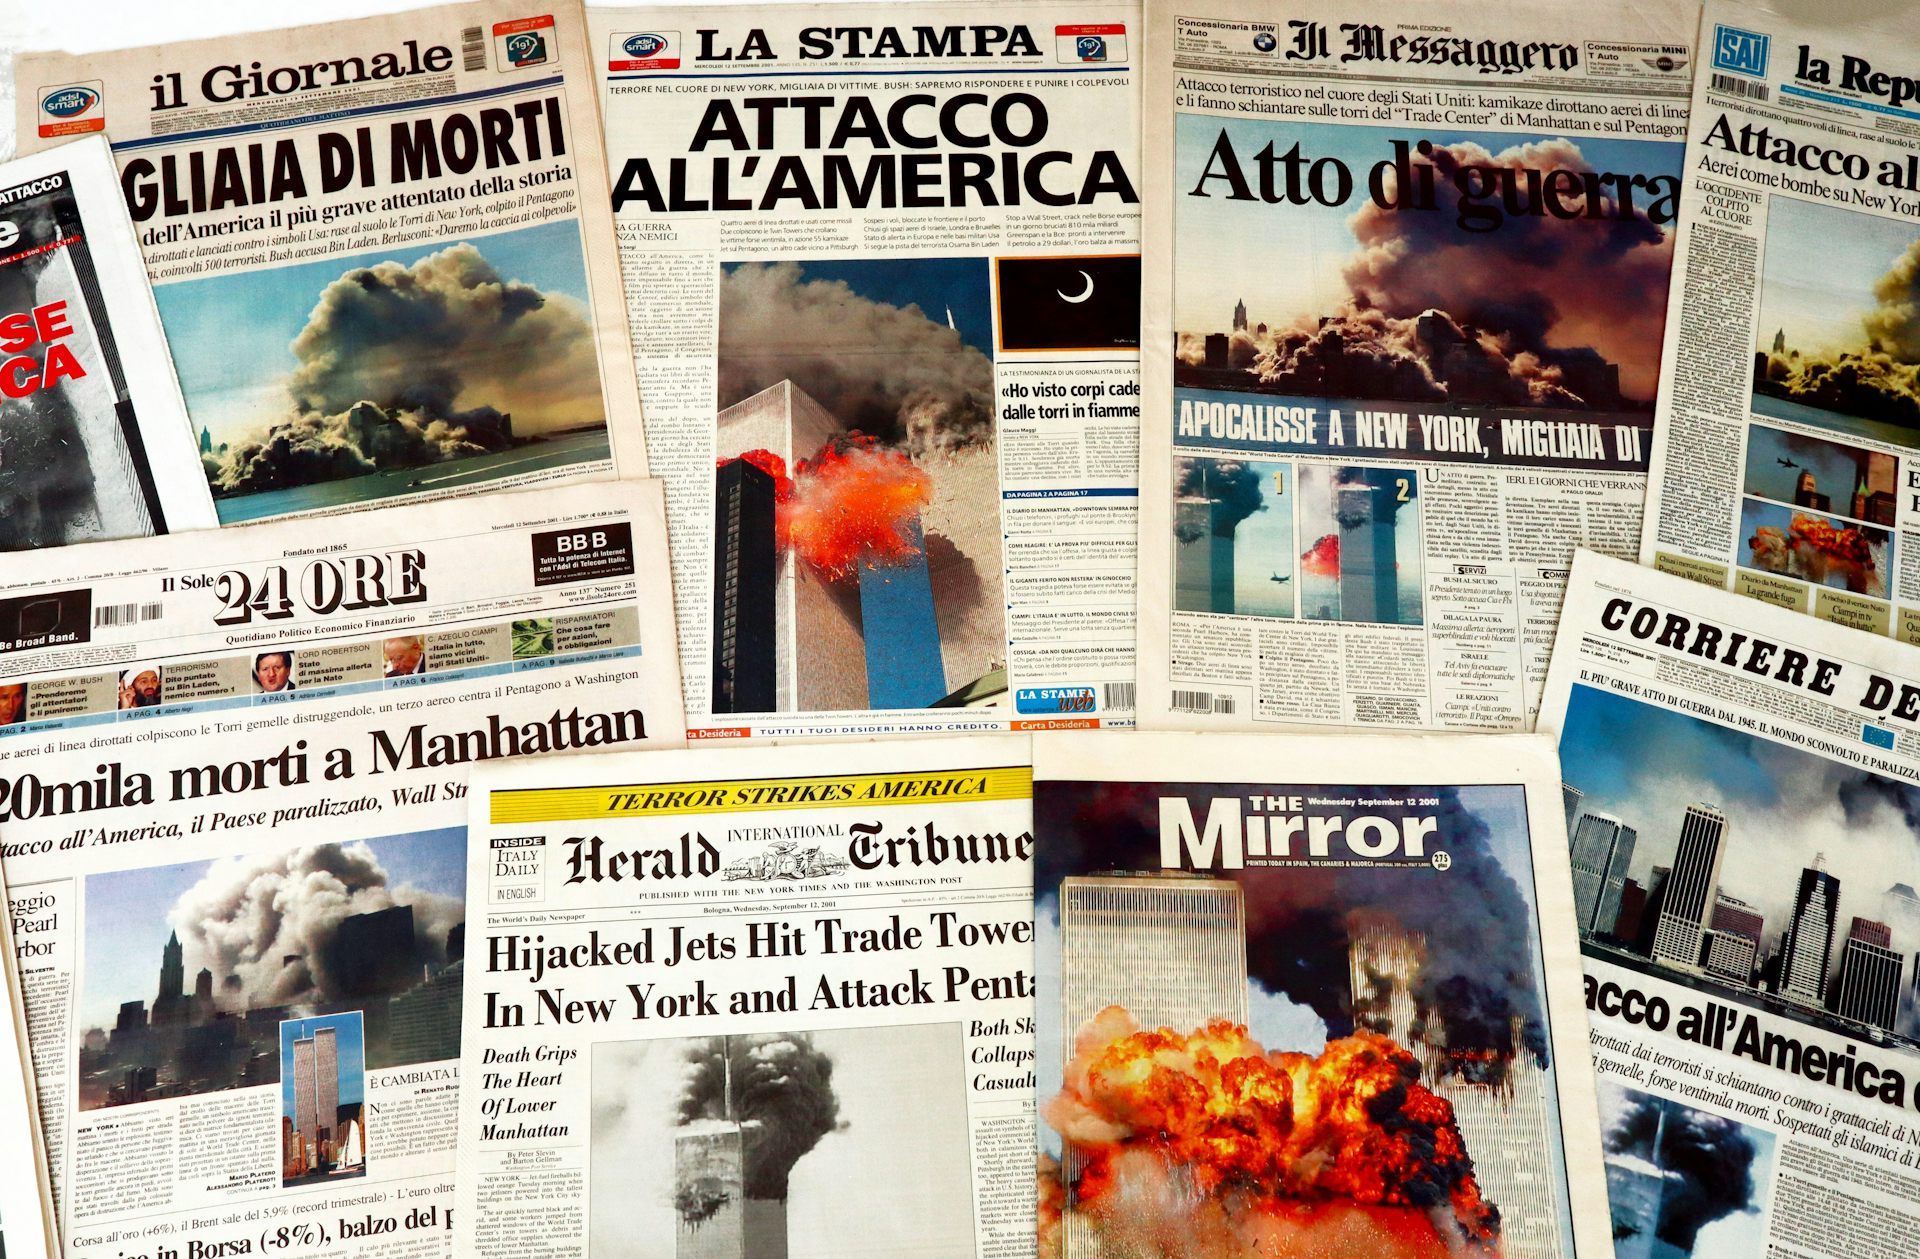  címlapok a világ minden tájáról 9/11-ről.